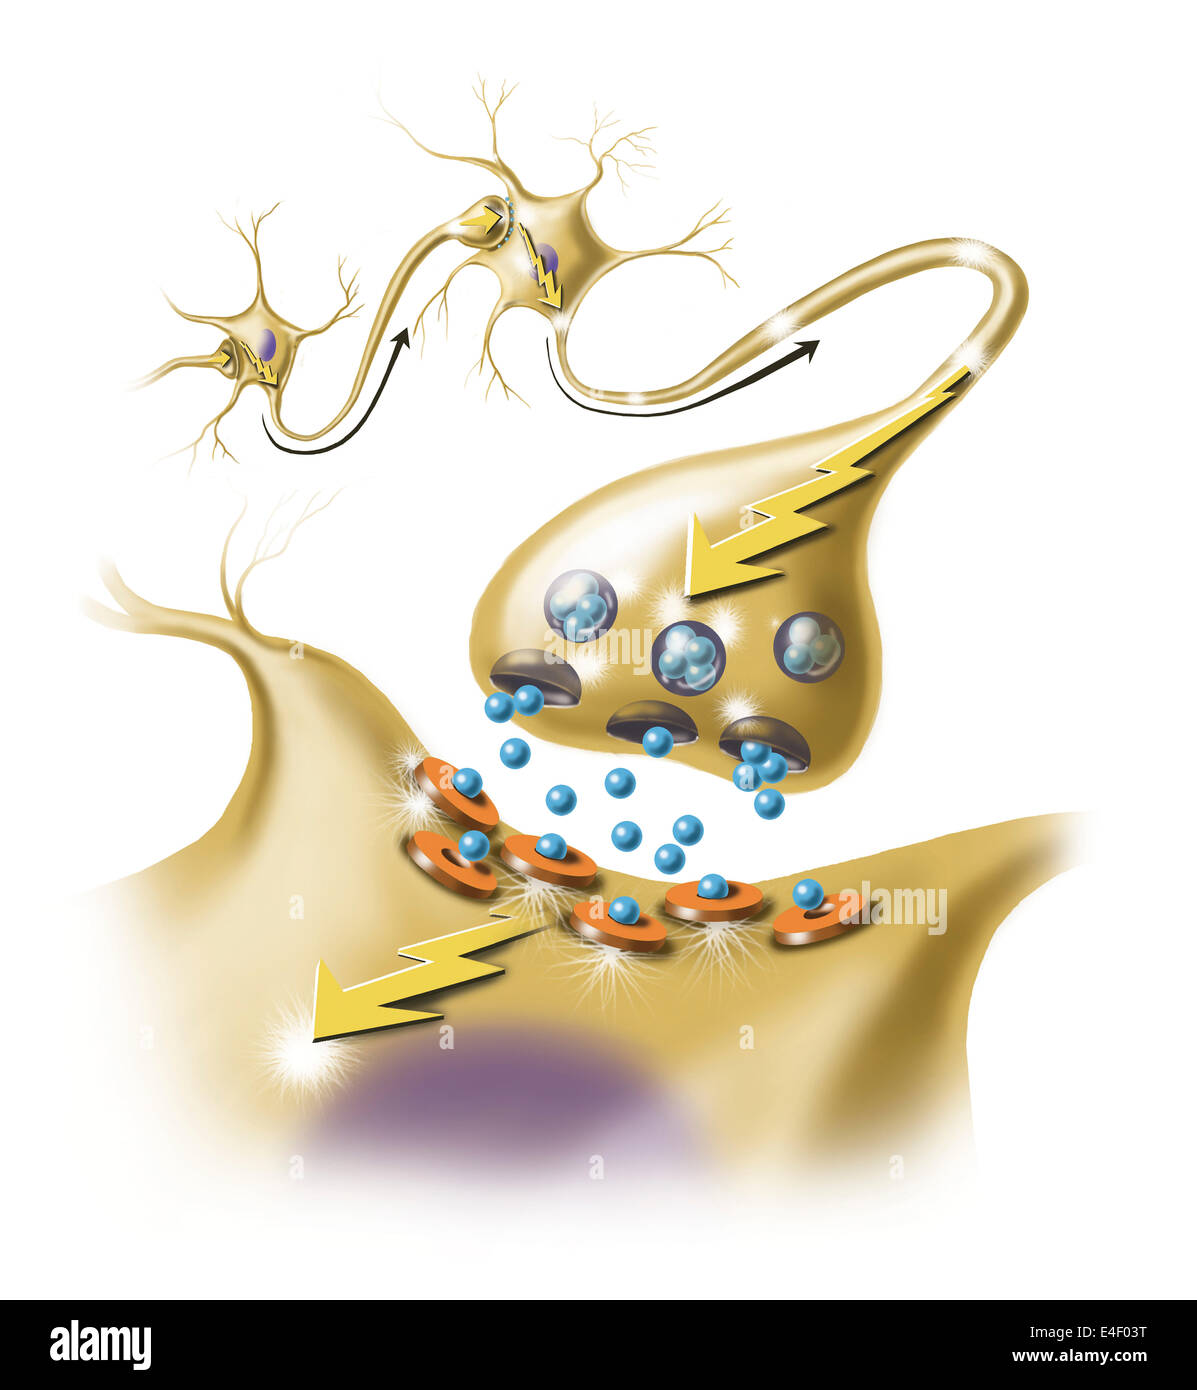 Détail d'une synapse nerveuse montrant la libération de neurotransmetteurs. Banque D'Images